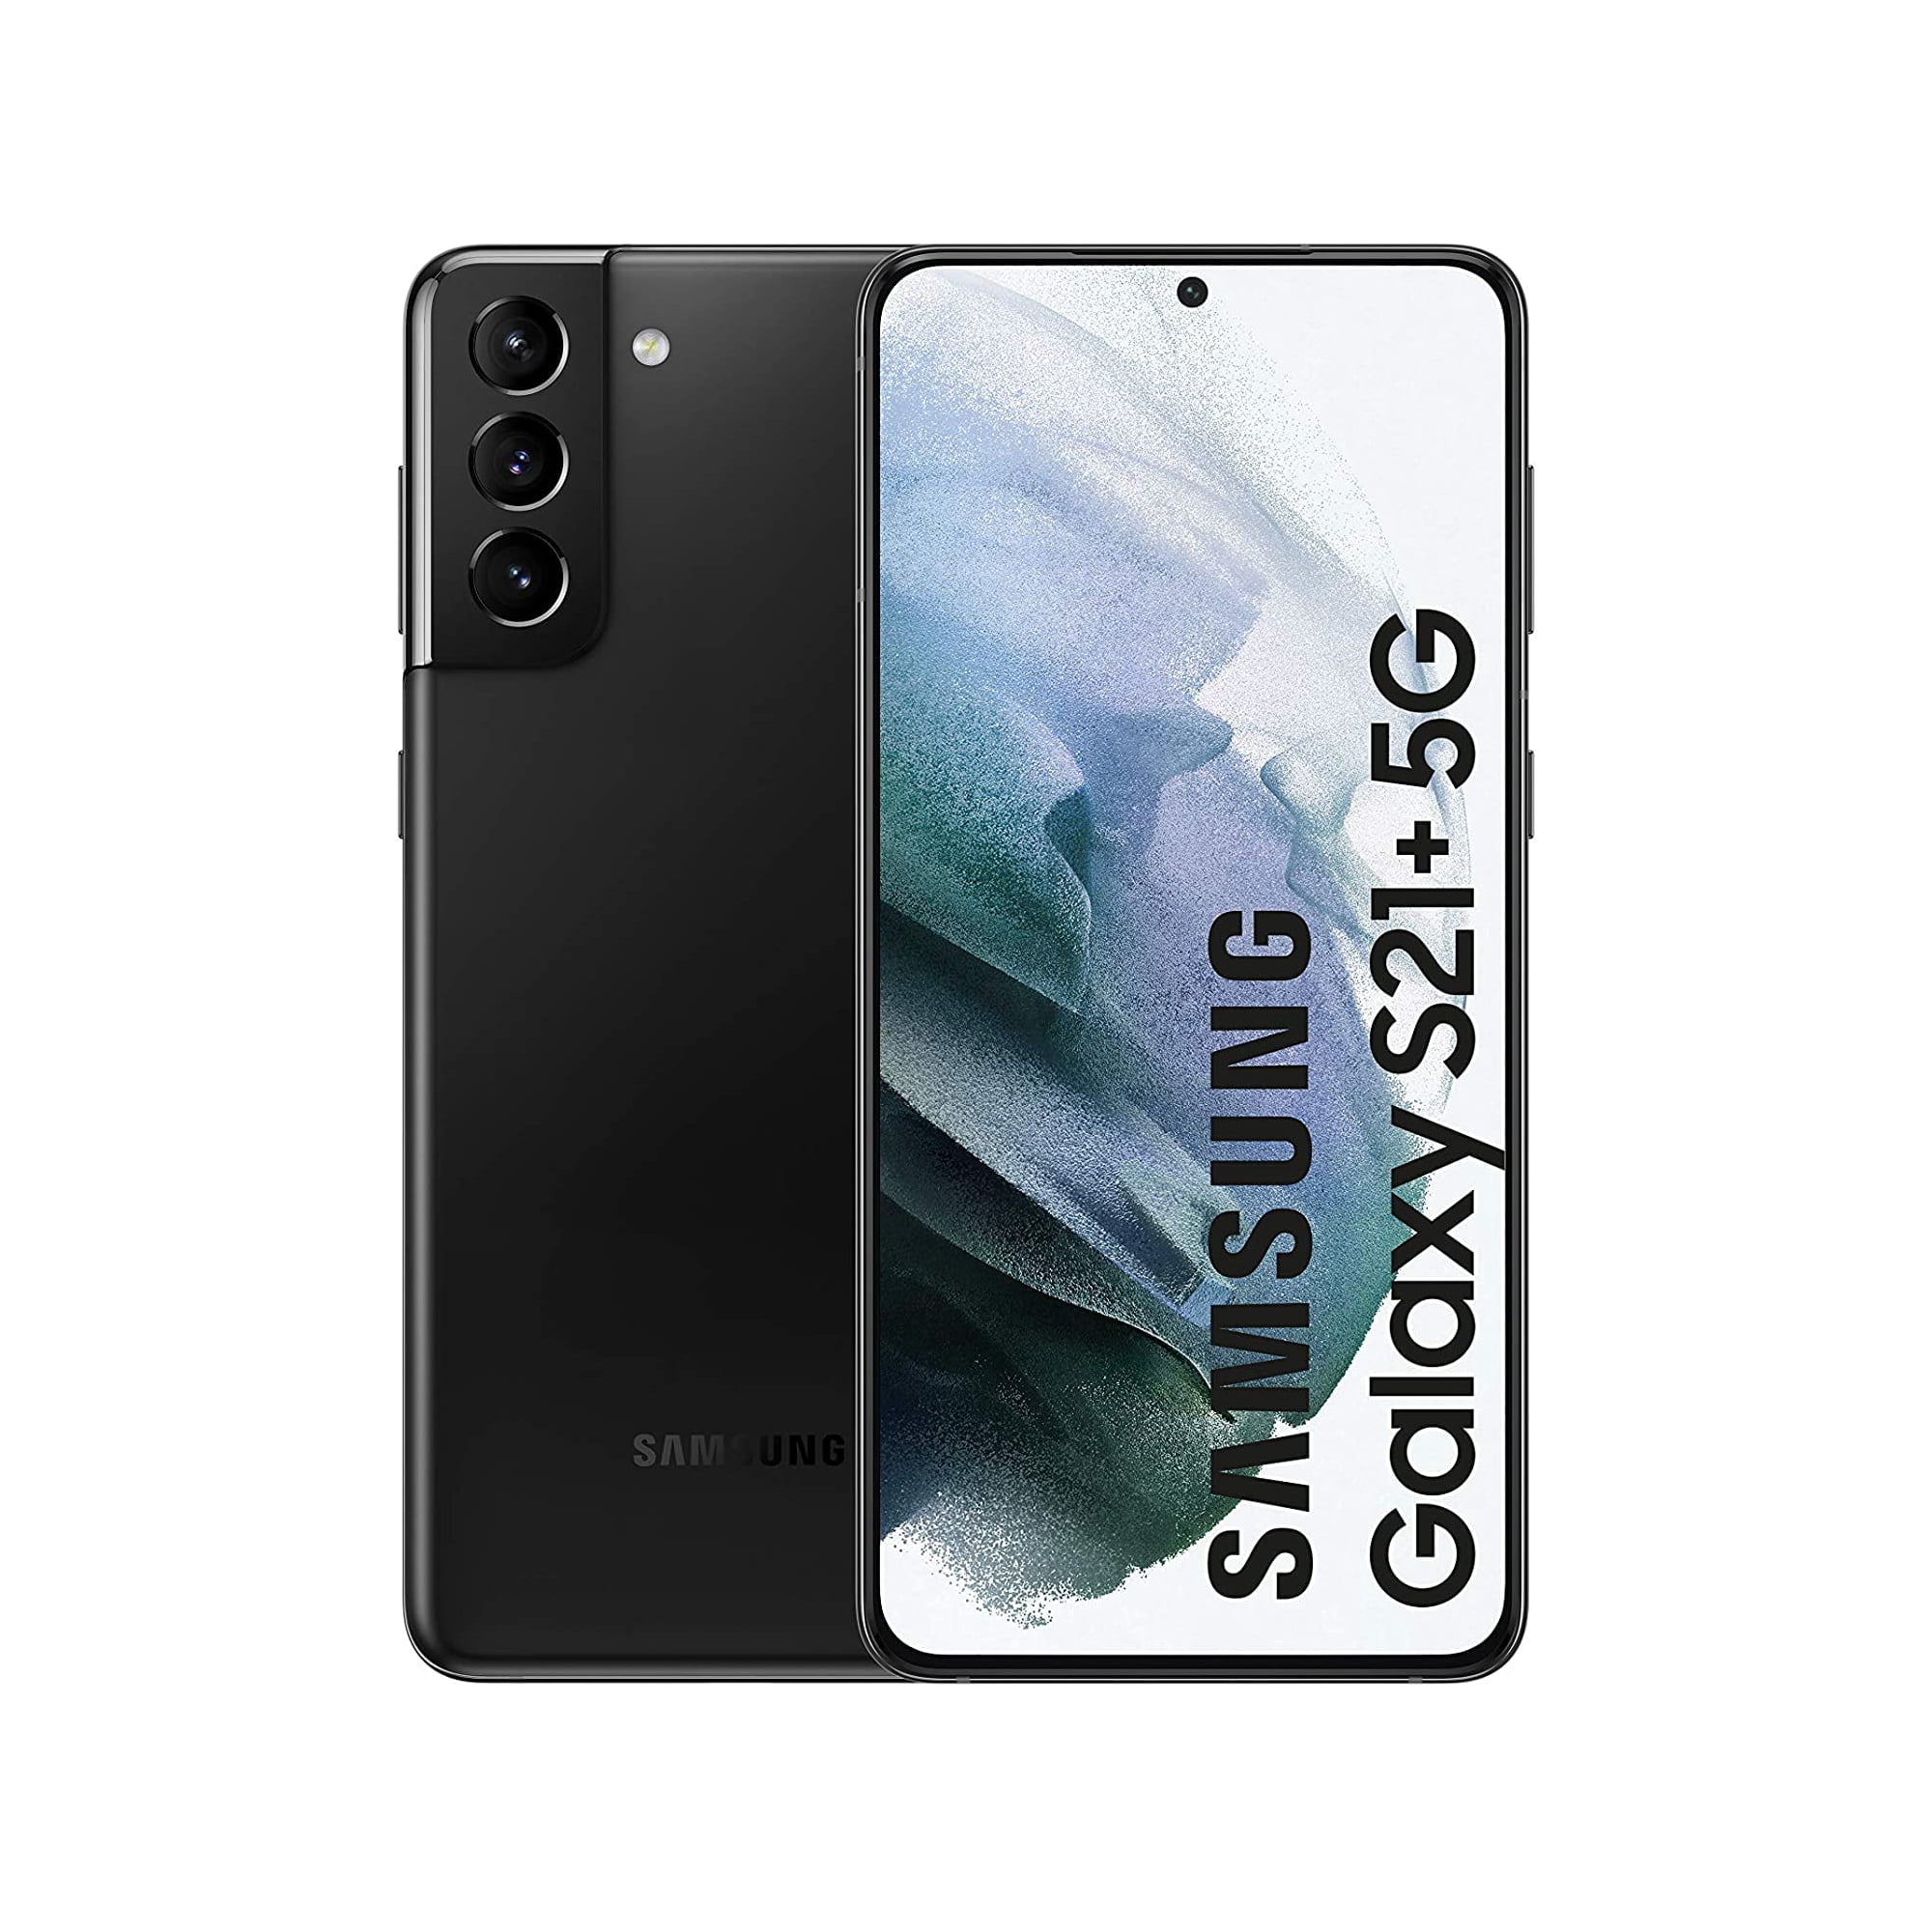 Samsung Galaxy S21 Plus (SM-G996) 128GB 5G Dual Sim Smartphone – Unlocked  Phantom Black